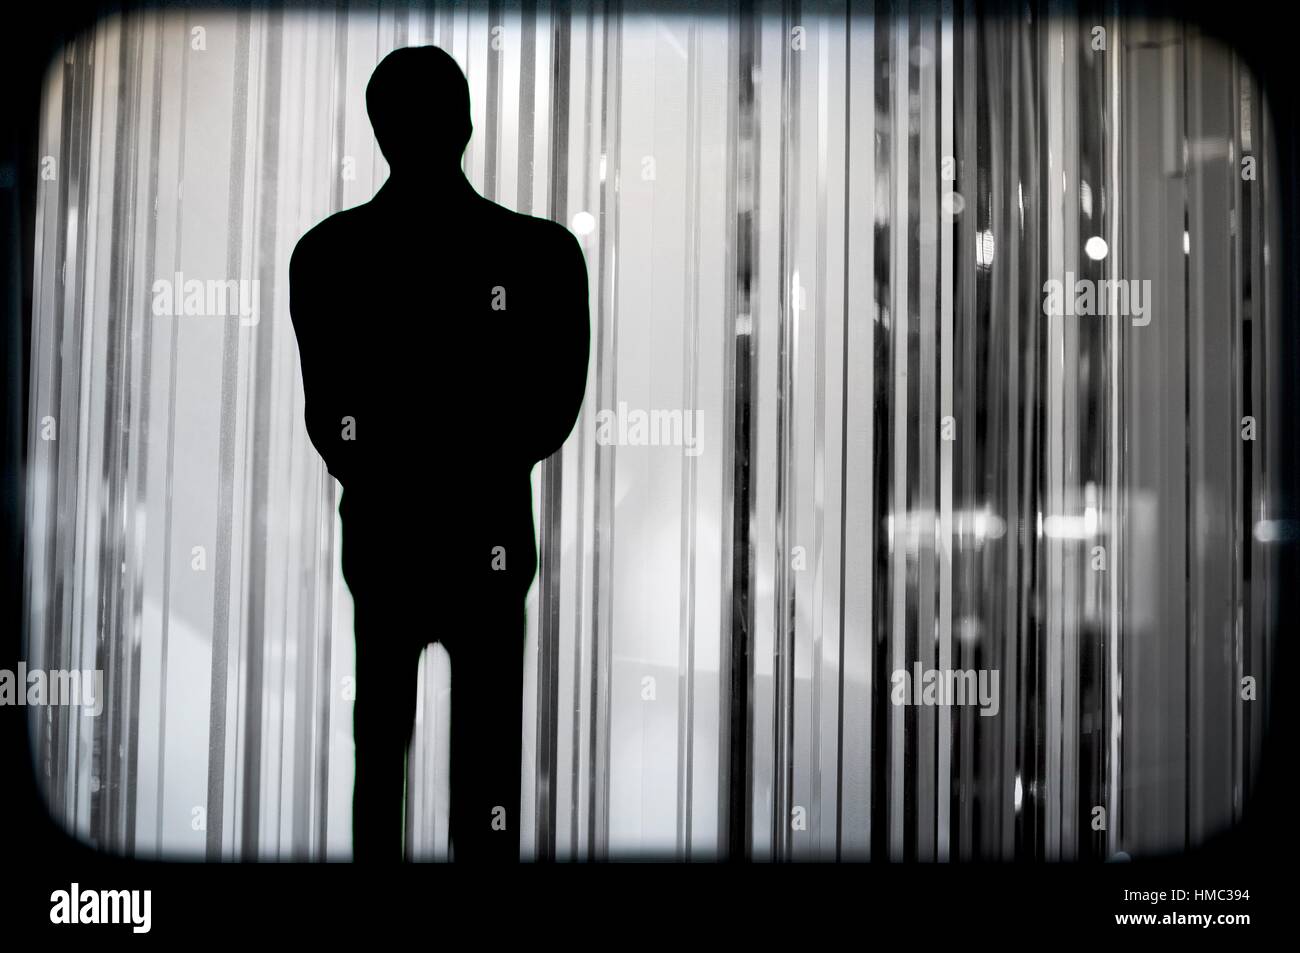 silueta de un hombre irreconocible y de incognito sobre unas sombras, silhouette of a unrecognizable and incognito man. Stock Photo